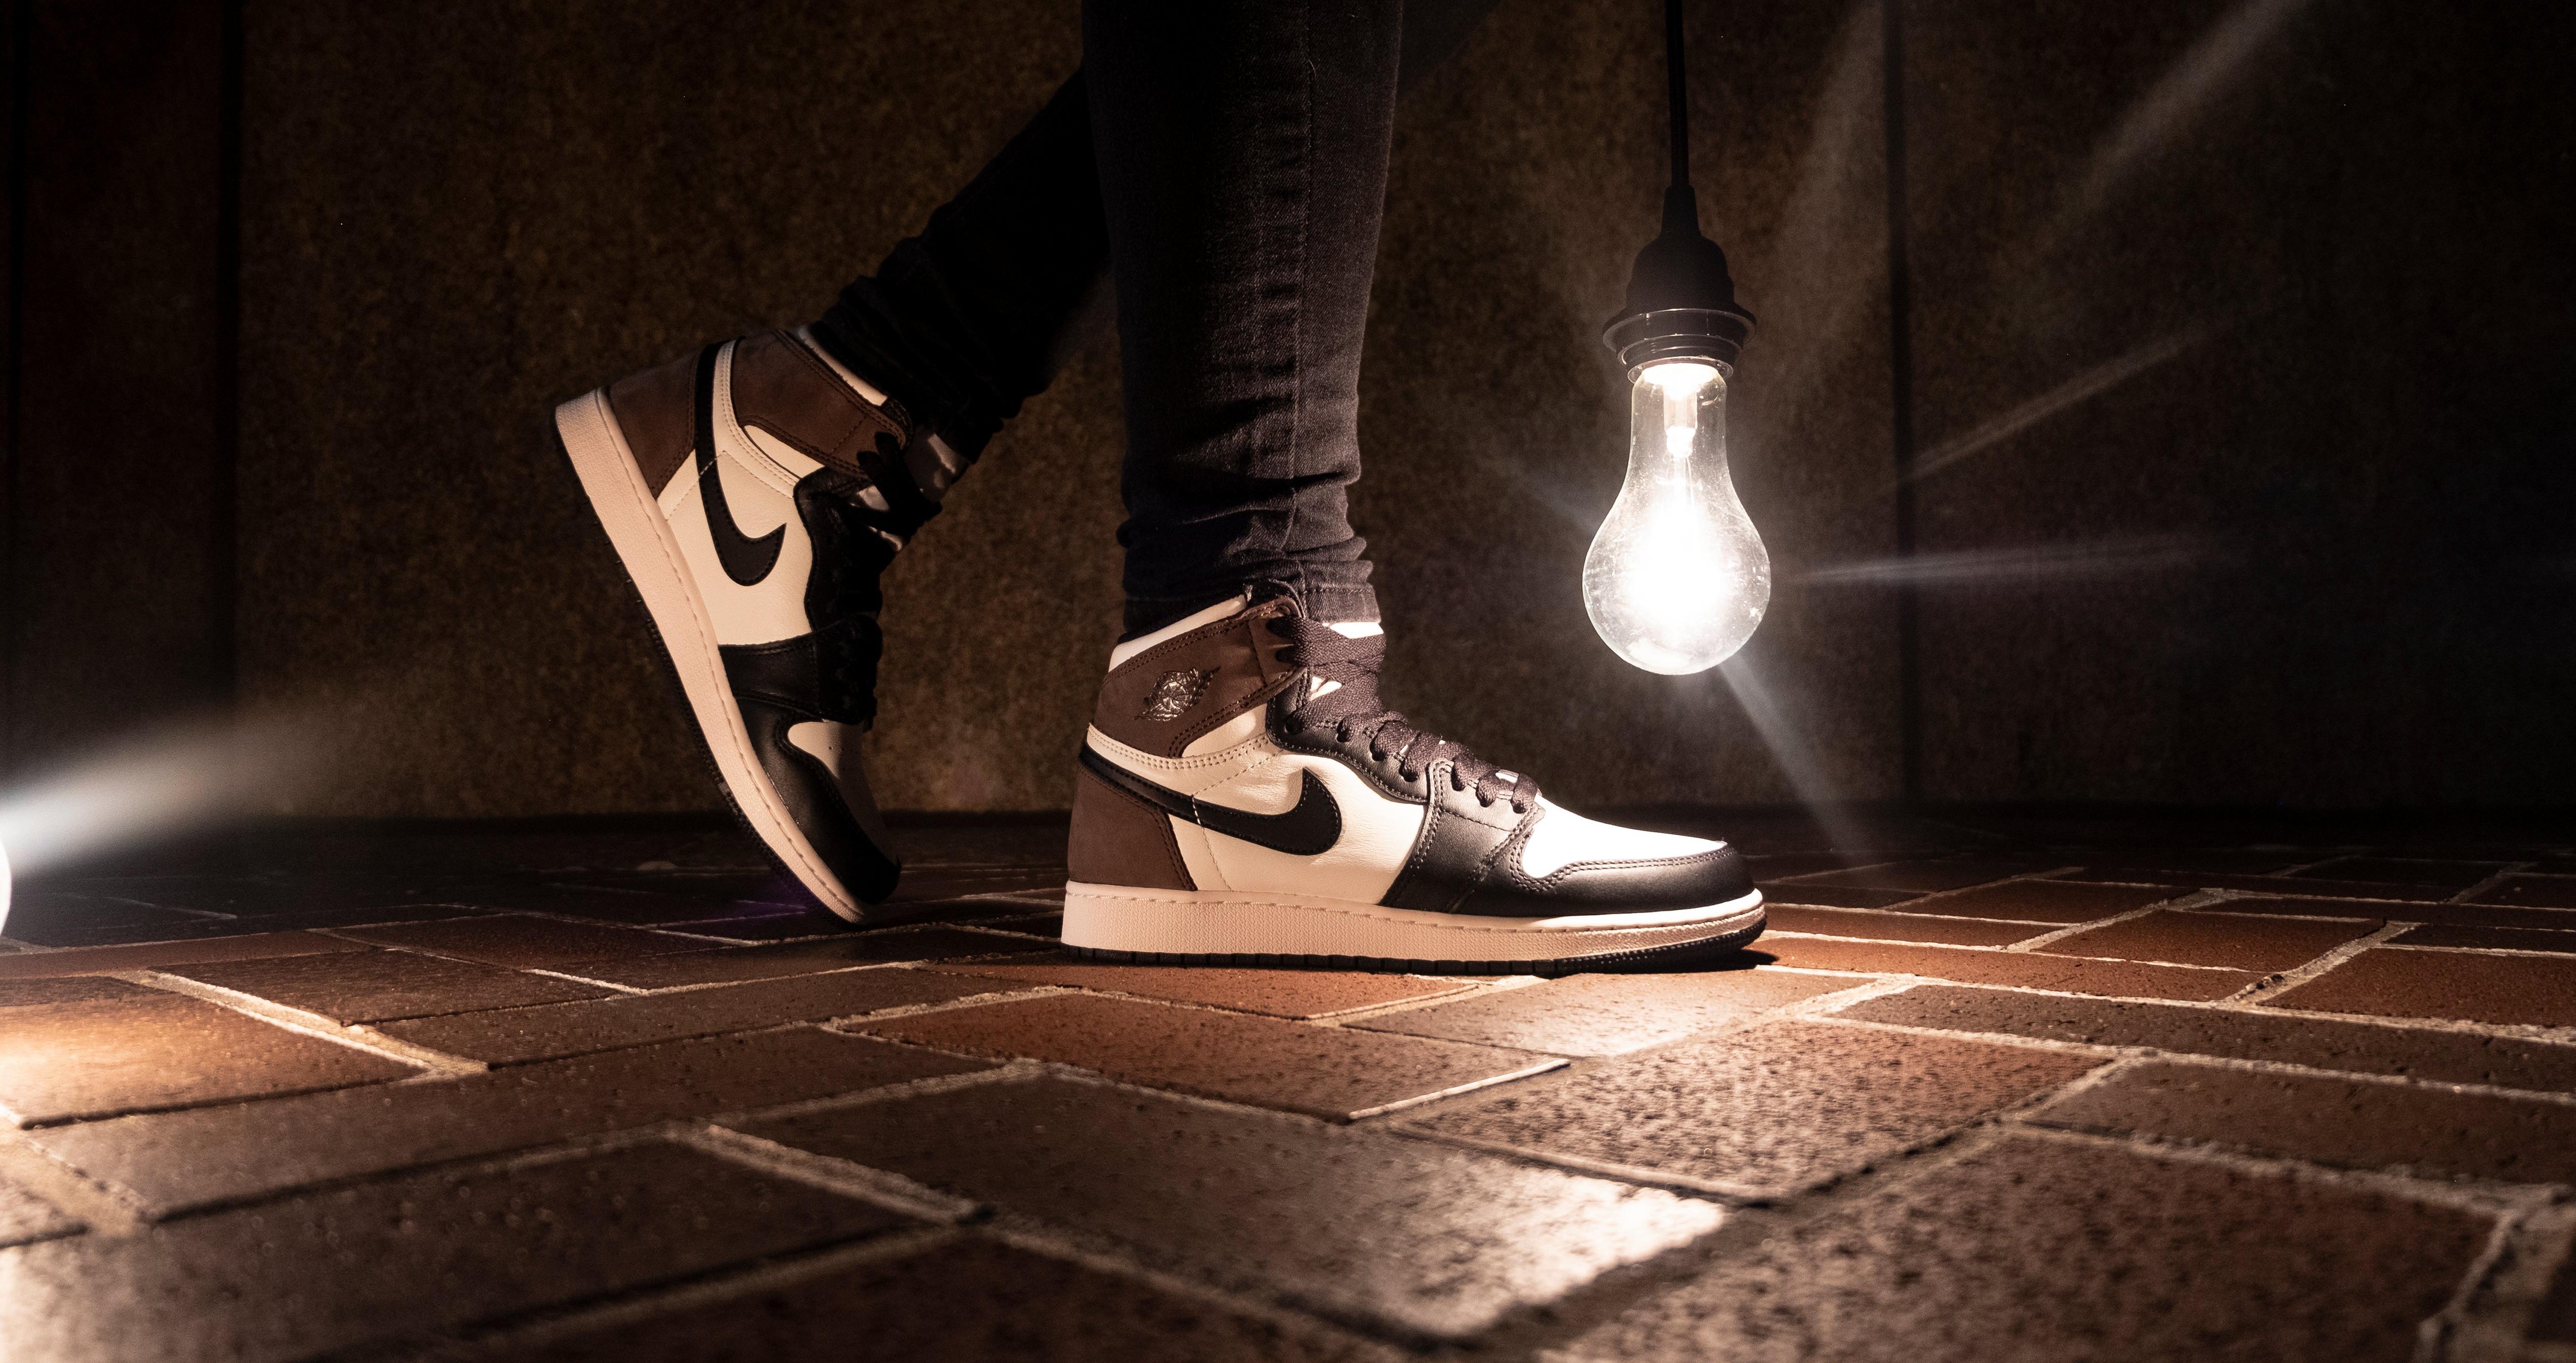 Sneakers Release – Jordan 1 Retro High OG “Dark Mocha”  Men’s and Kids’ Basketball Shoe